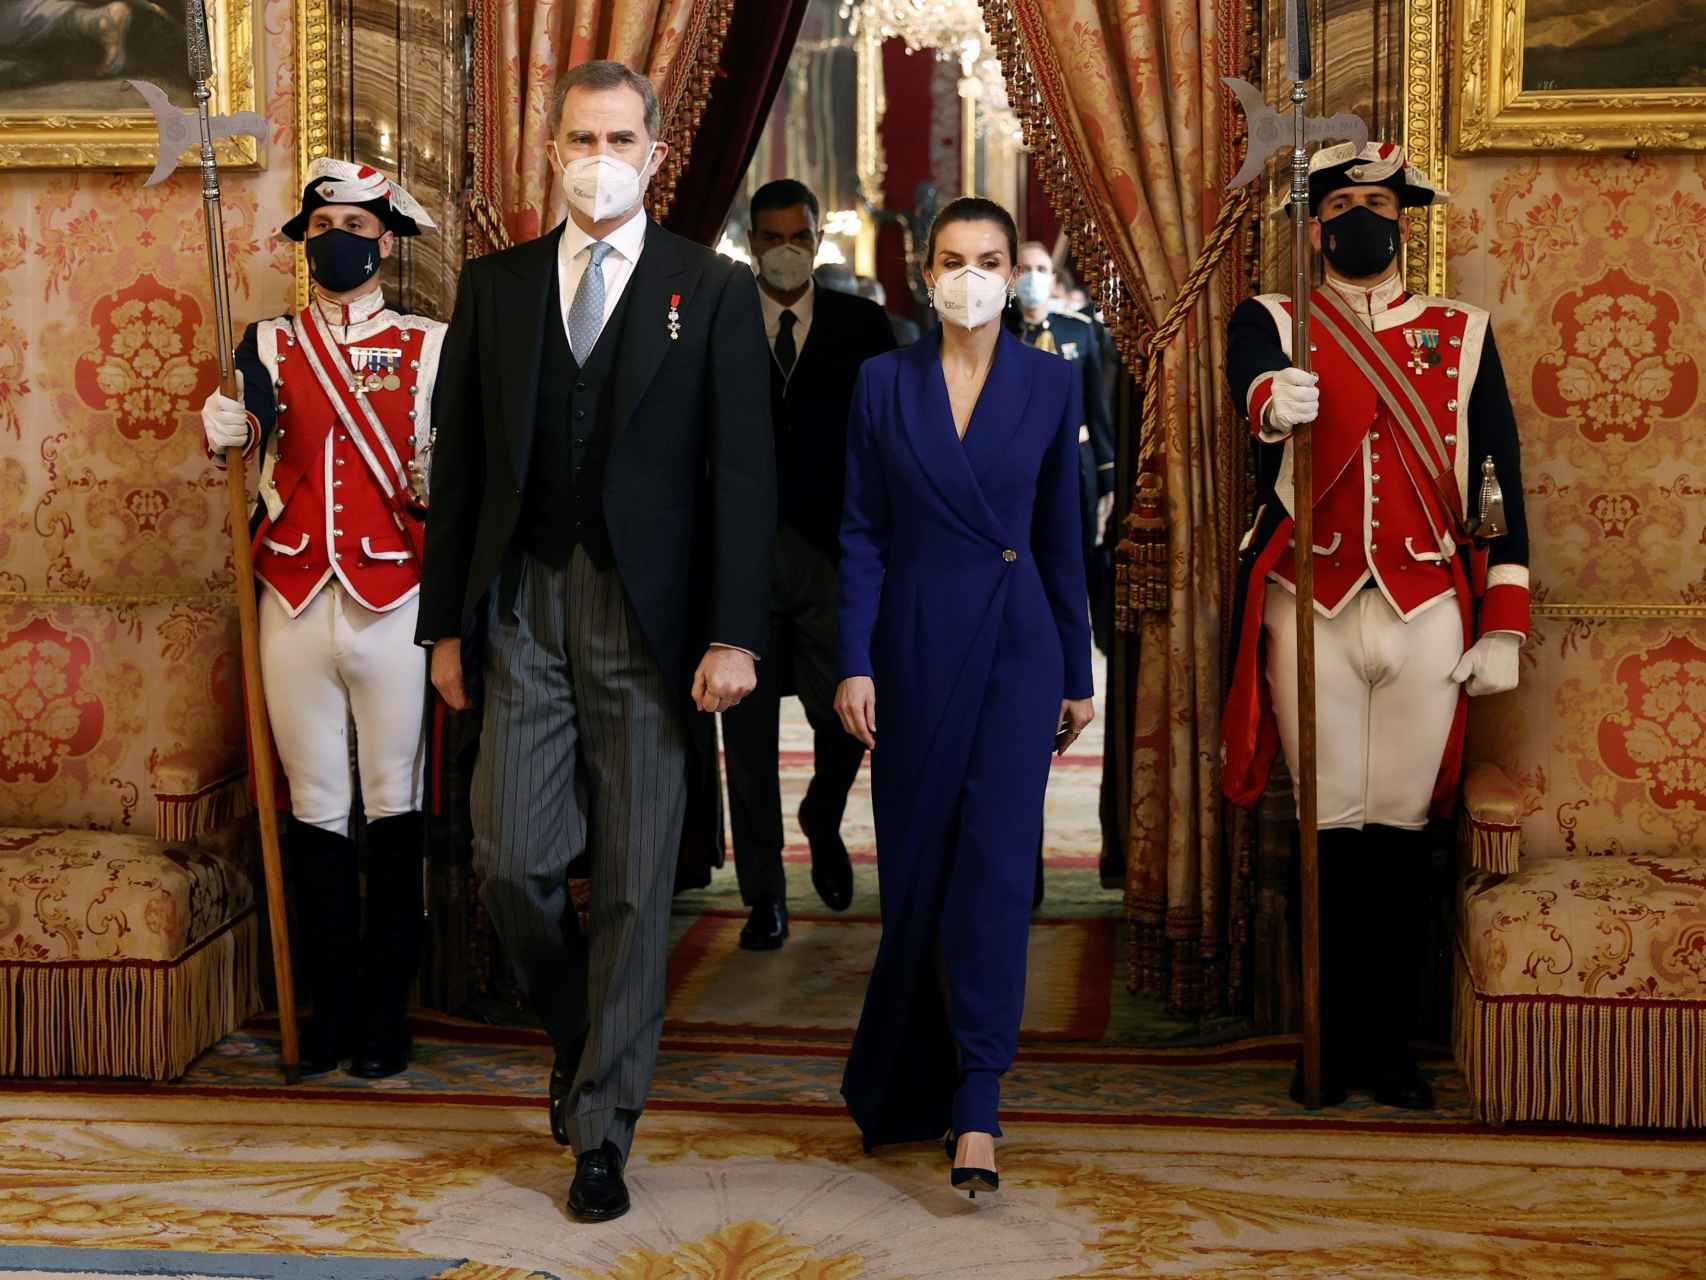 Los reyes Felipe VI y Letizia presidiendo la recepción del cuerpo diplomático acreditado en el Palacio Real.